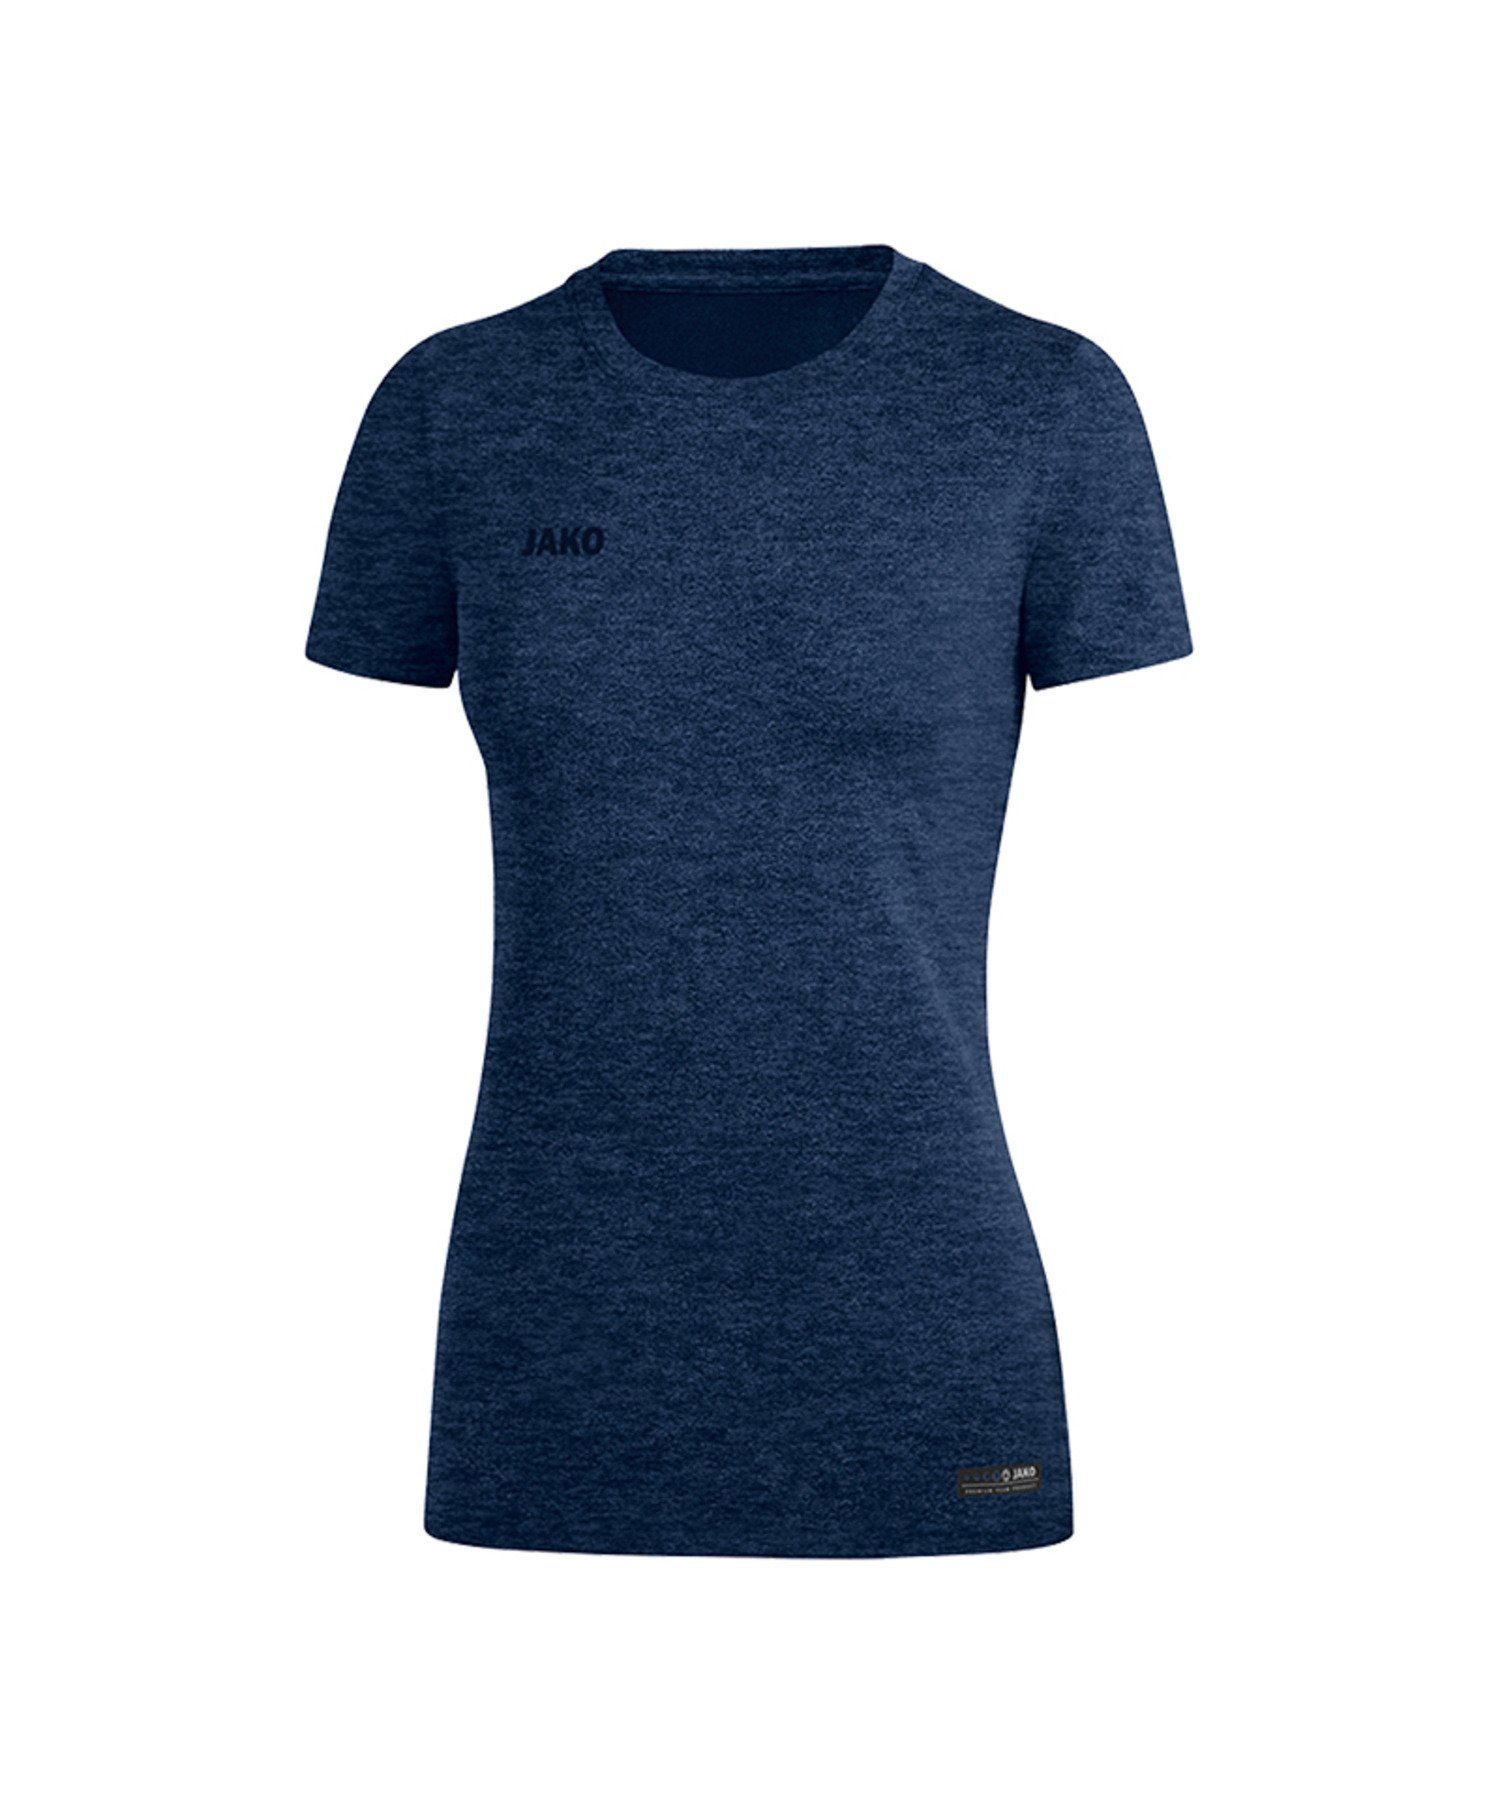 Jako T-Shirt T-Shirt Premium Basic Damen default Blau